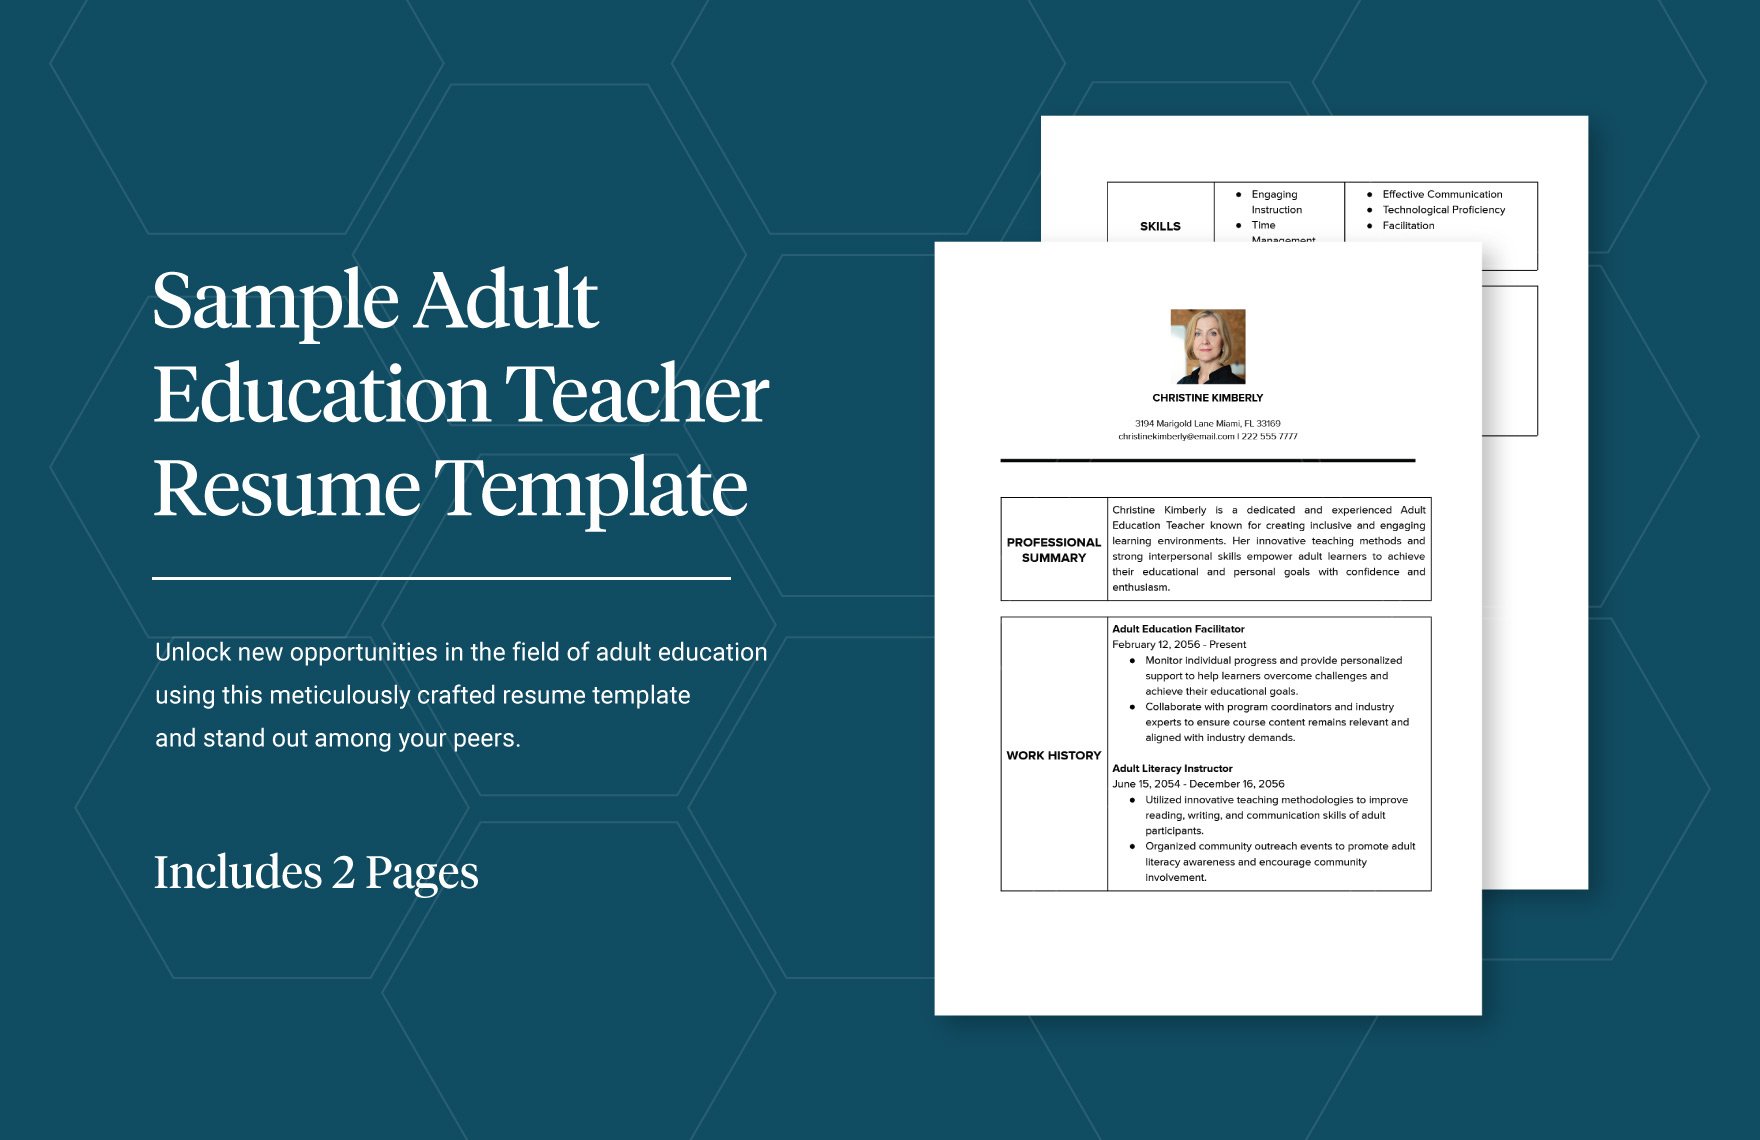 Sample Adult Education Teacher Resume Template